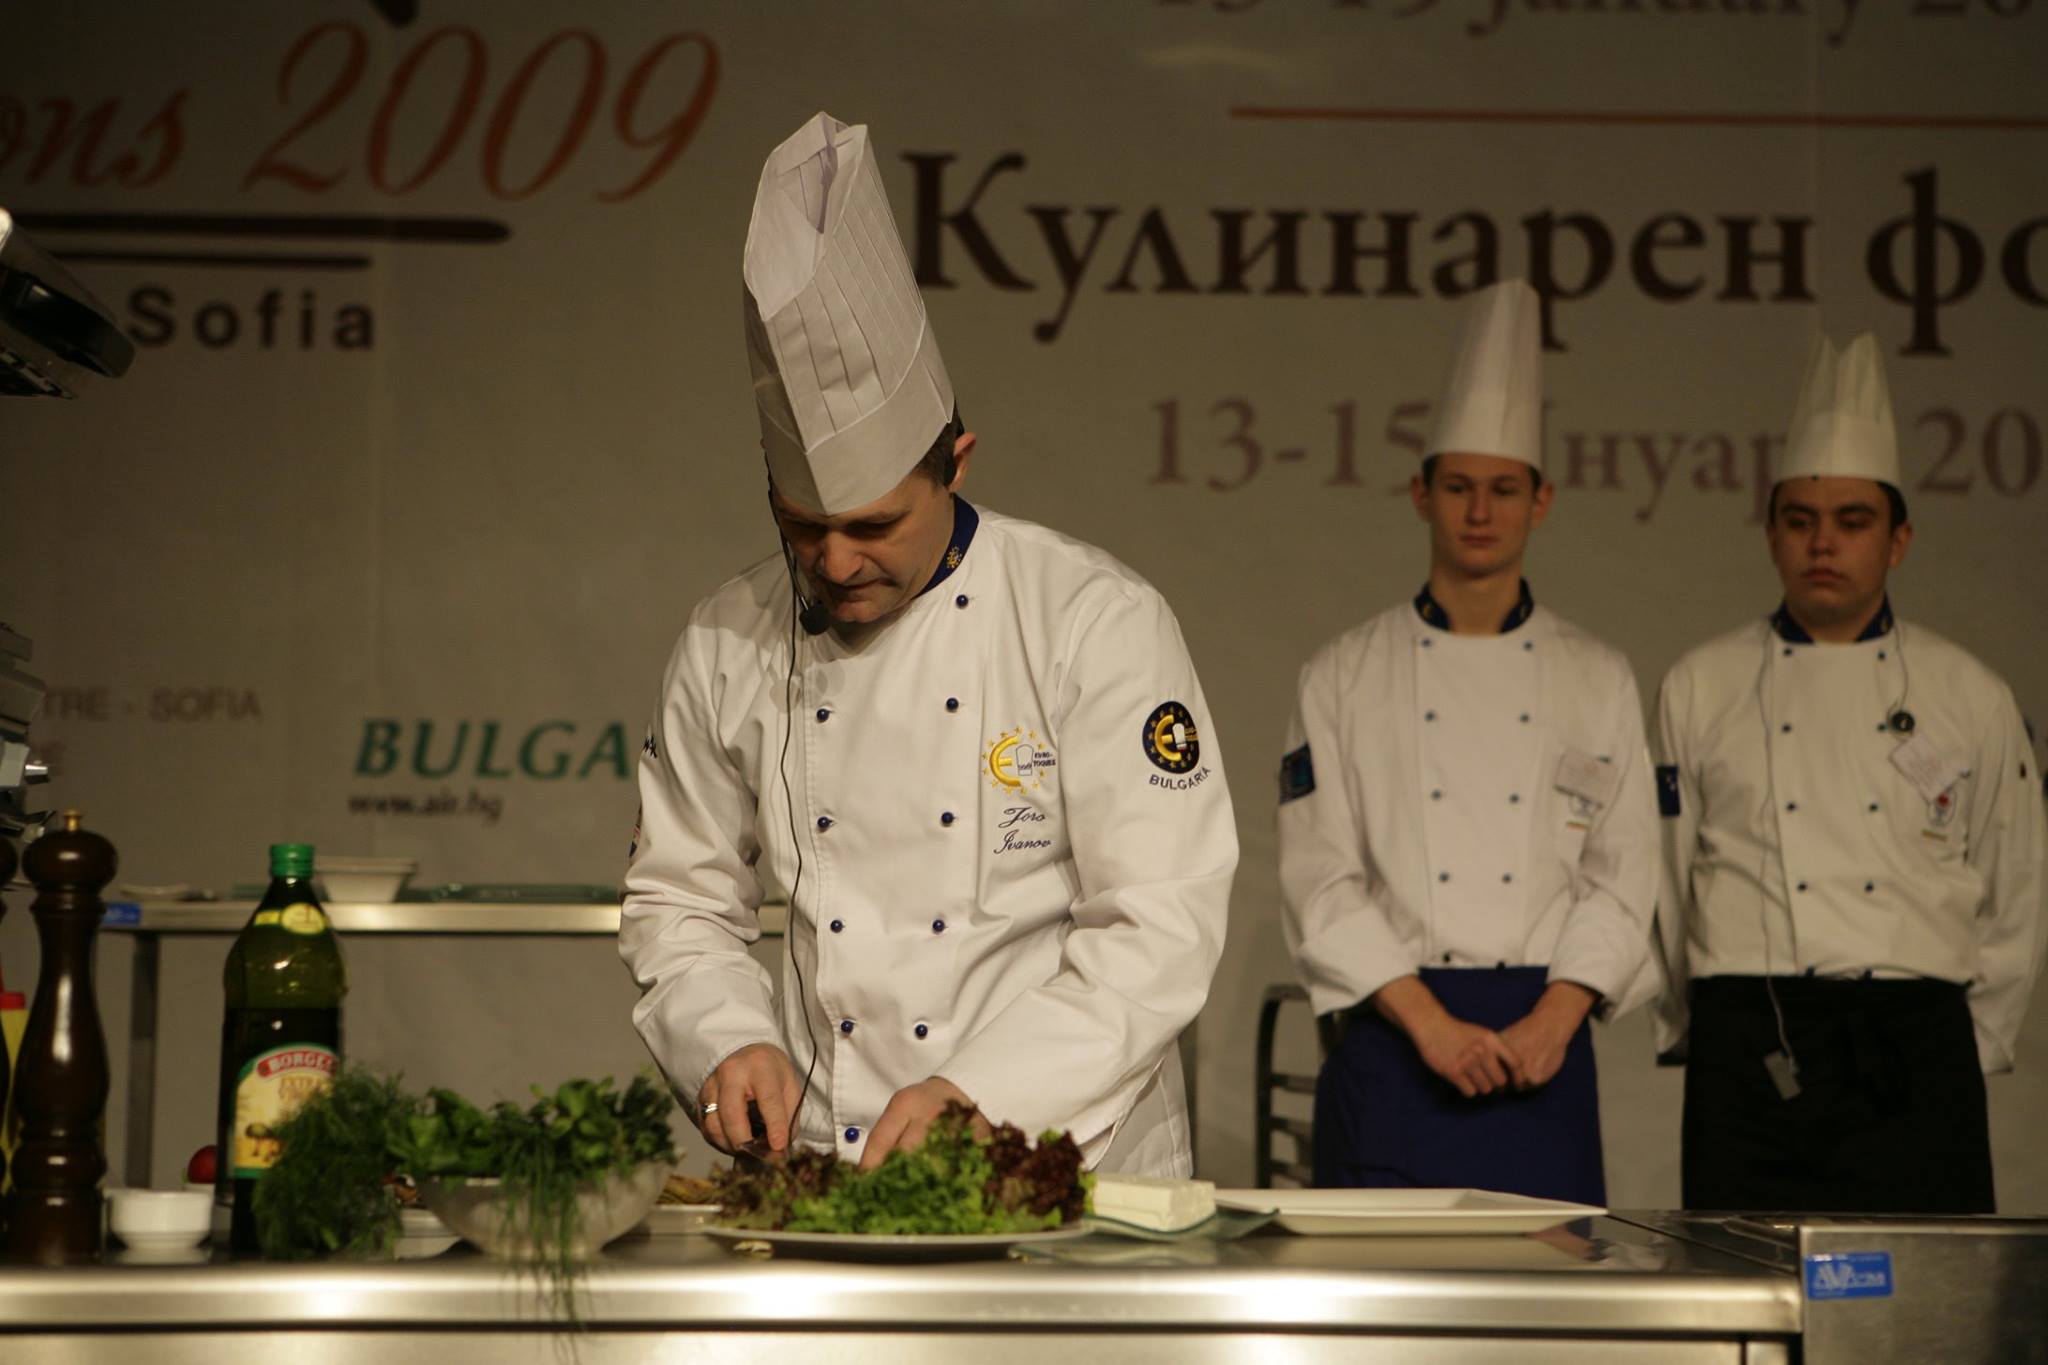 10 години Евро-Ток България. Кулинарен форум „Концепции“